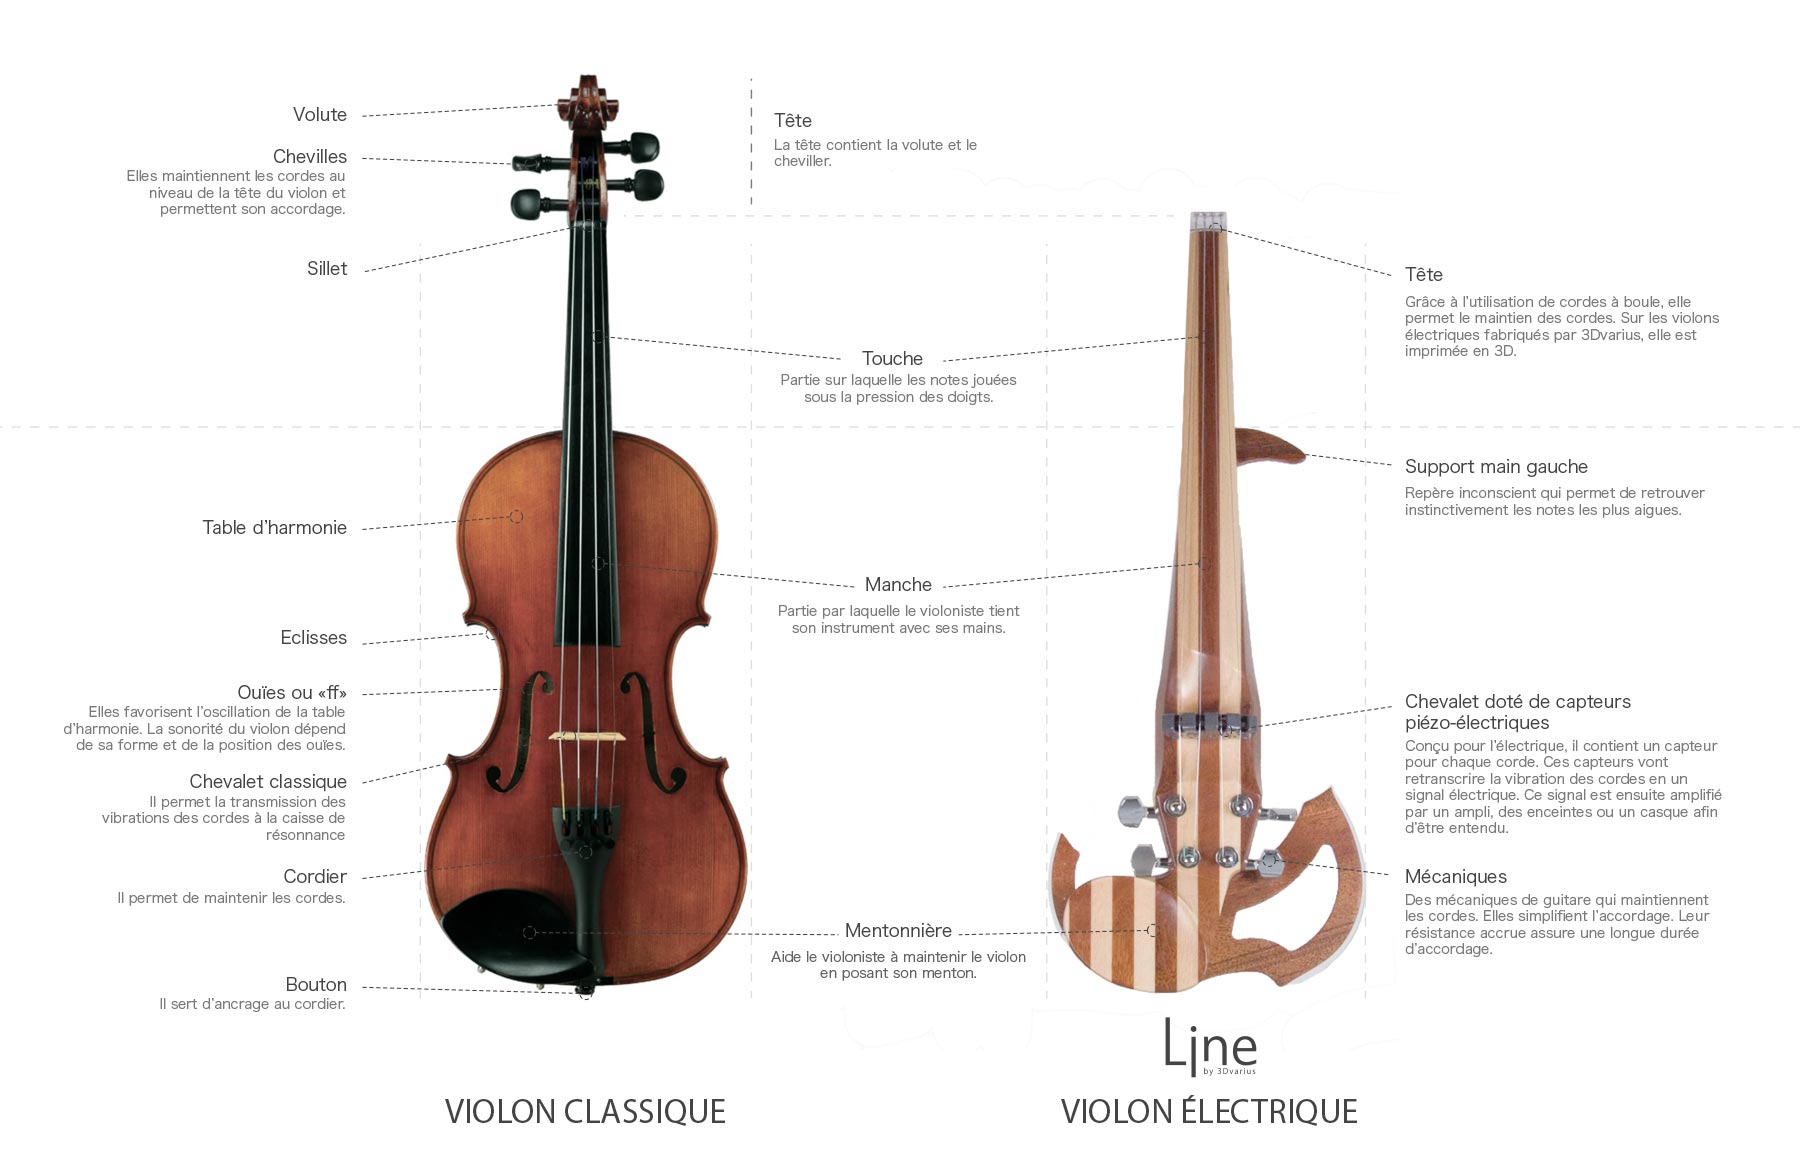 Violon classique VS violon électrique